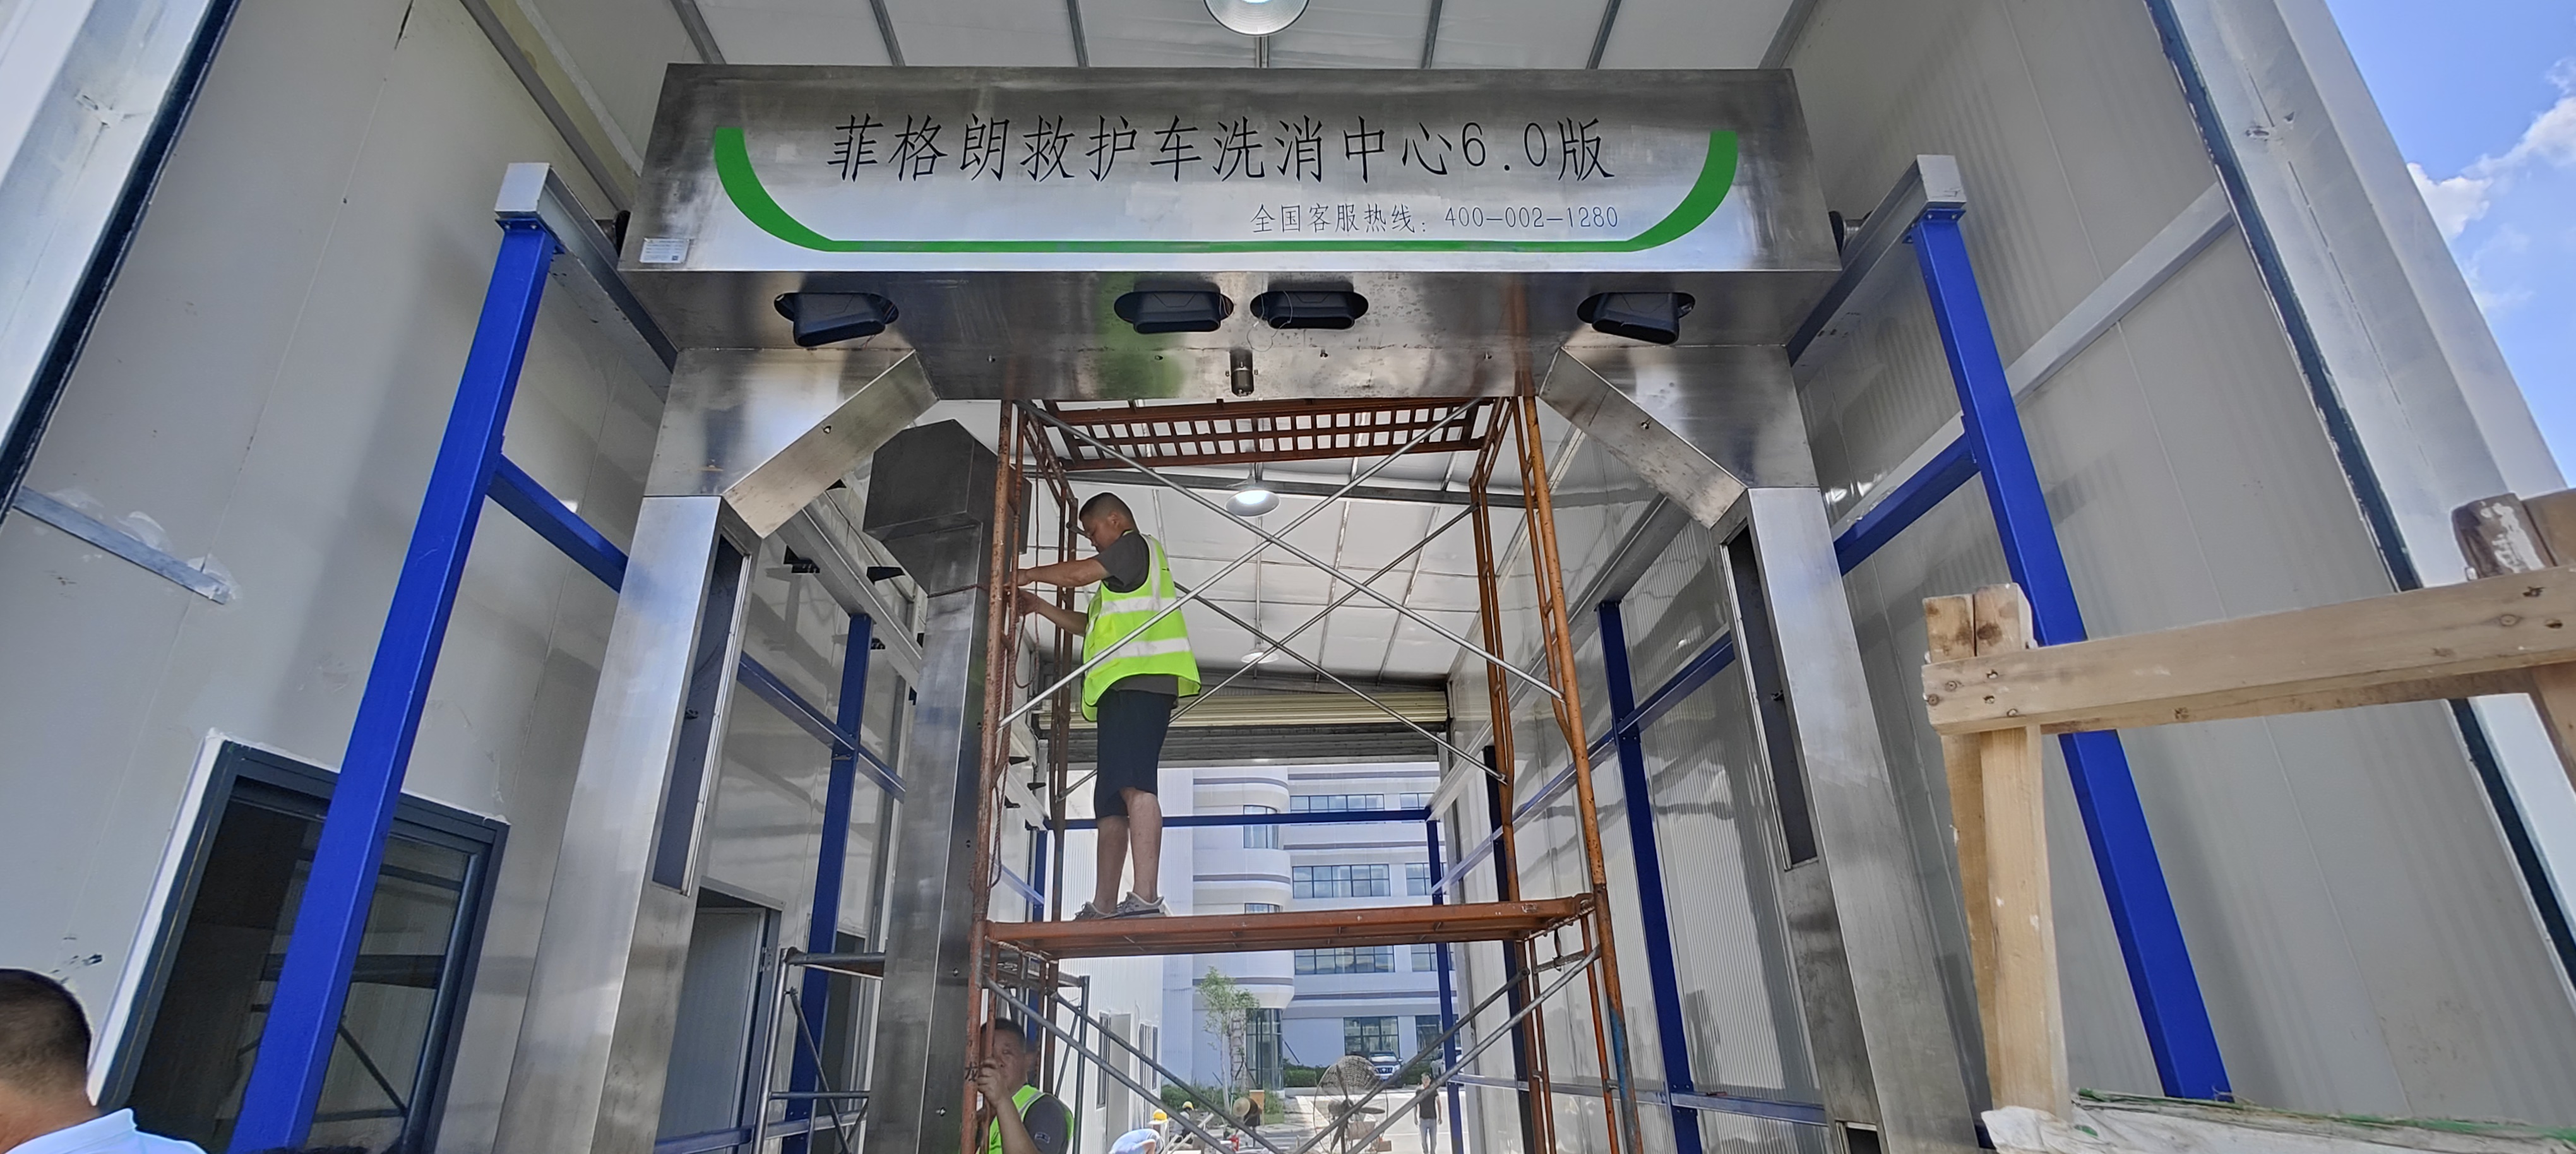 广东省妇幼保健院菲格朗救护车洗消中心系统投入使用插图4